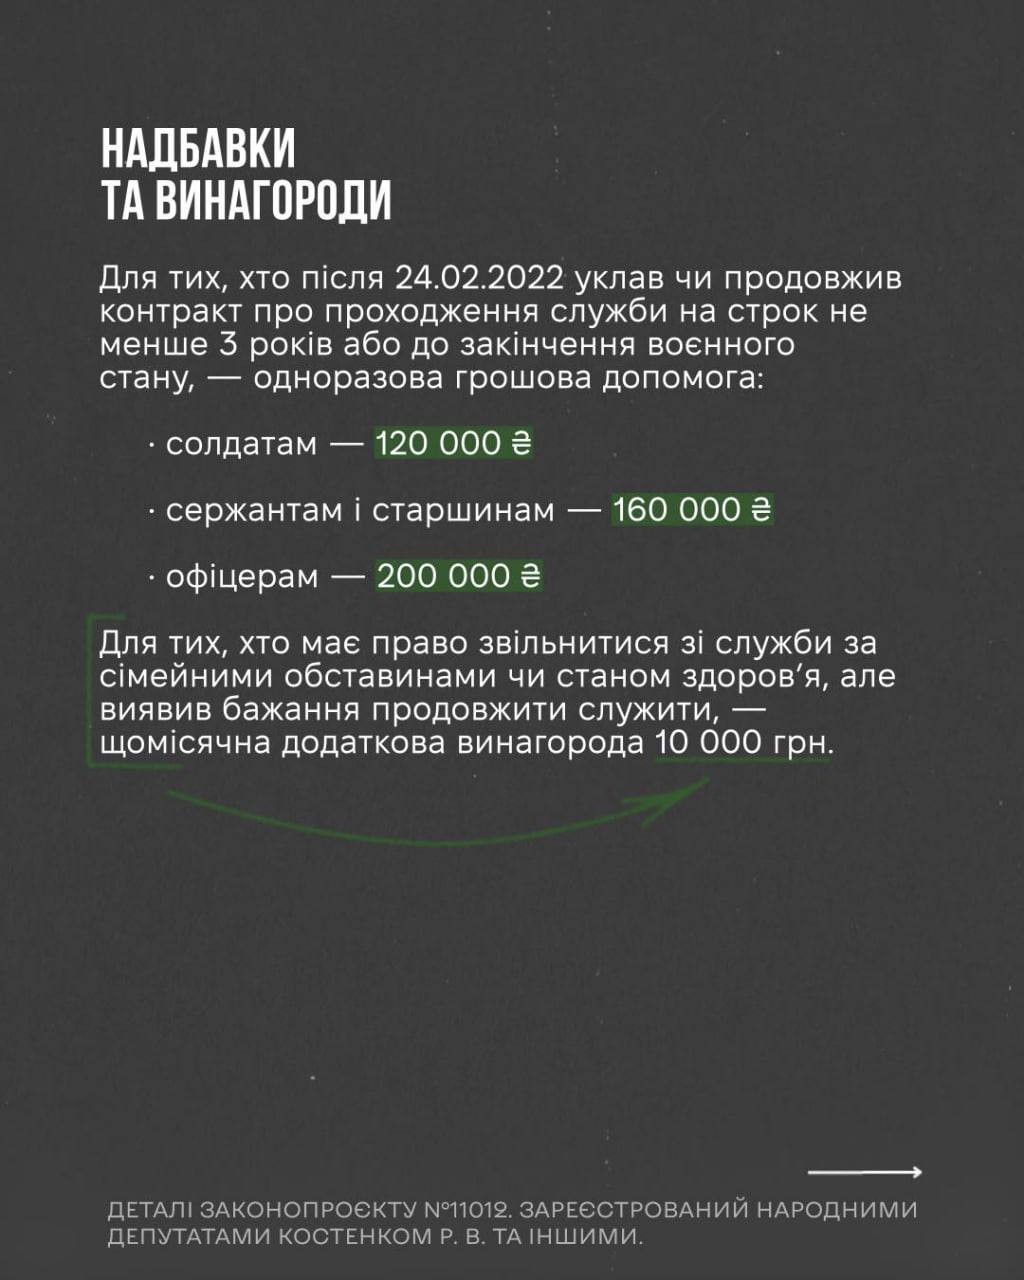 Снимок законопроекта на rada.gov.ua (с.6)